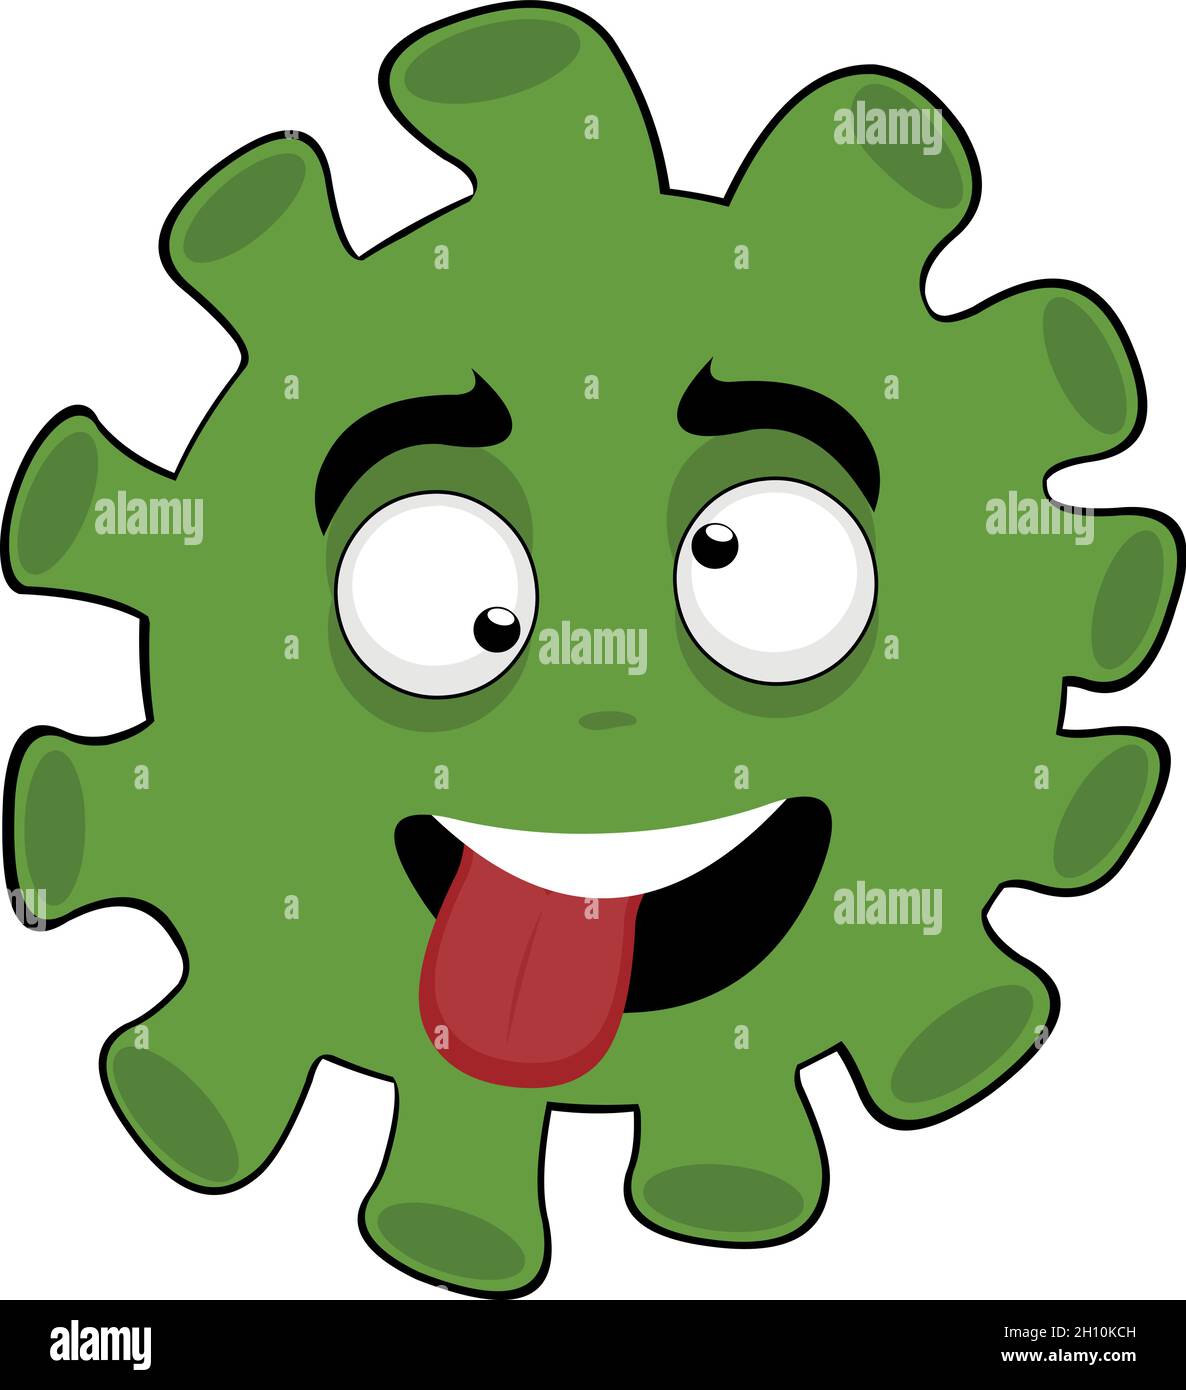 Vecteur émoticône illustration d'une caricature de bactéries, de virus ou de microbe, avec une expression folle et drôle Illustration de Vecteur